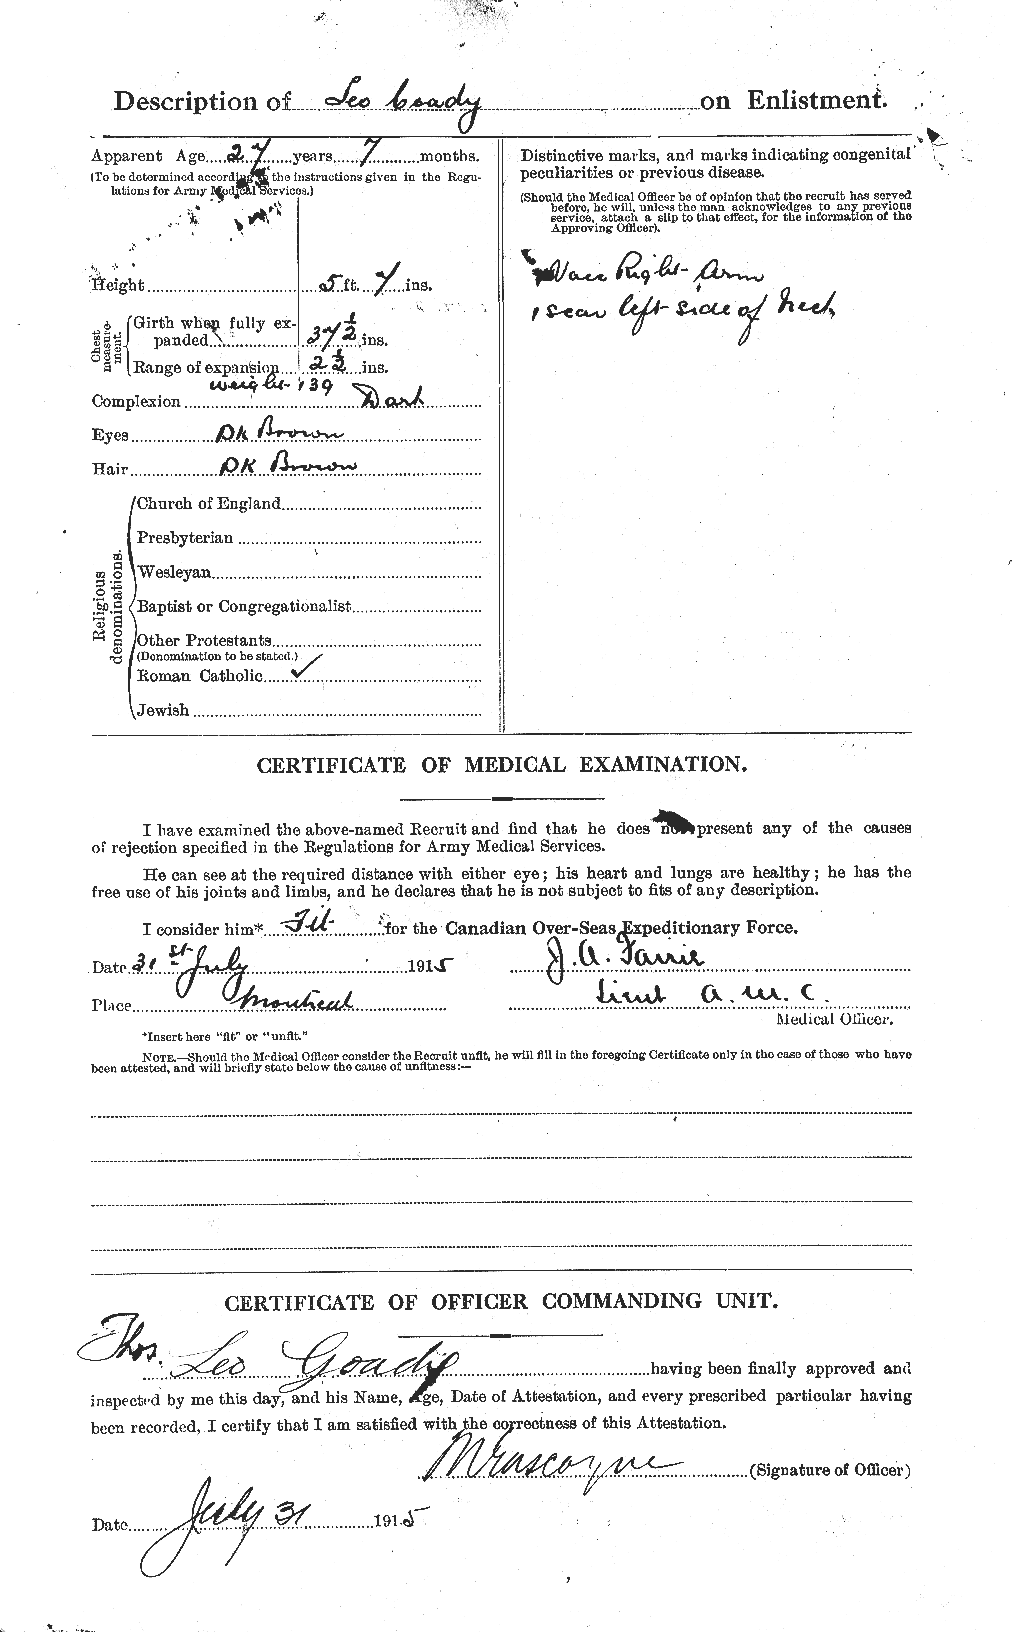 Dossiers du Personnel de la Première Guerre mondiale - CEC 029319b